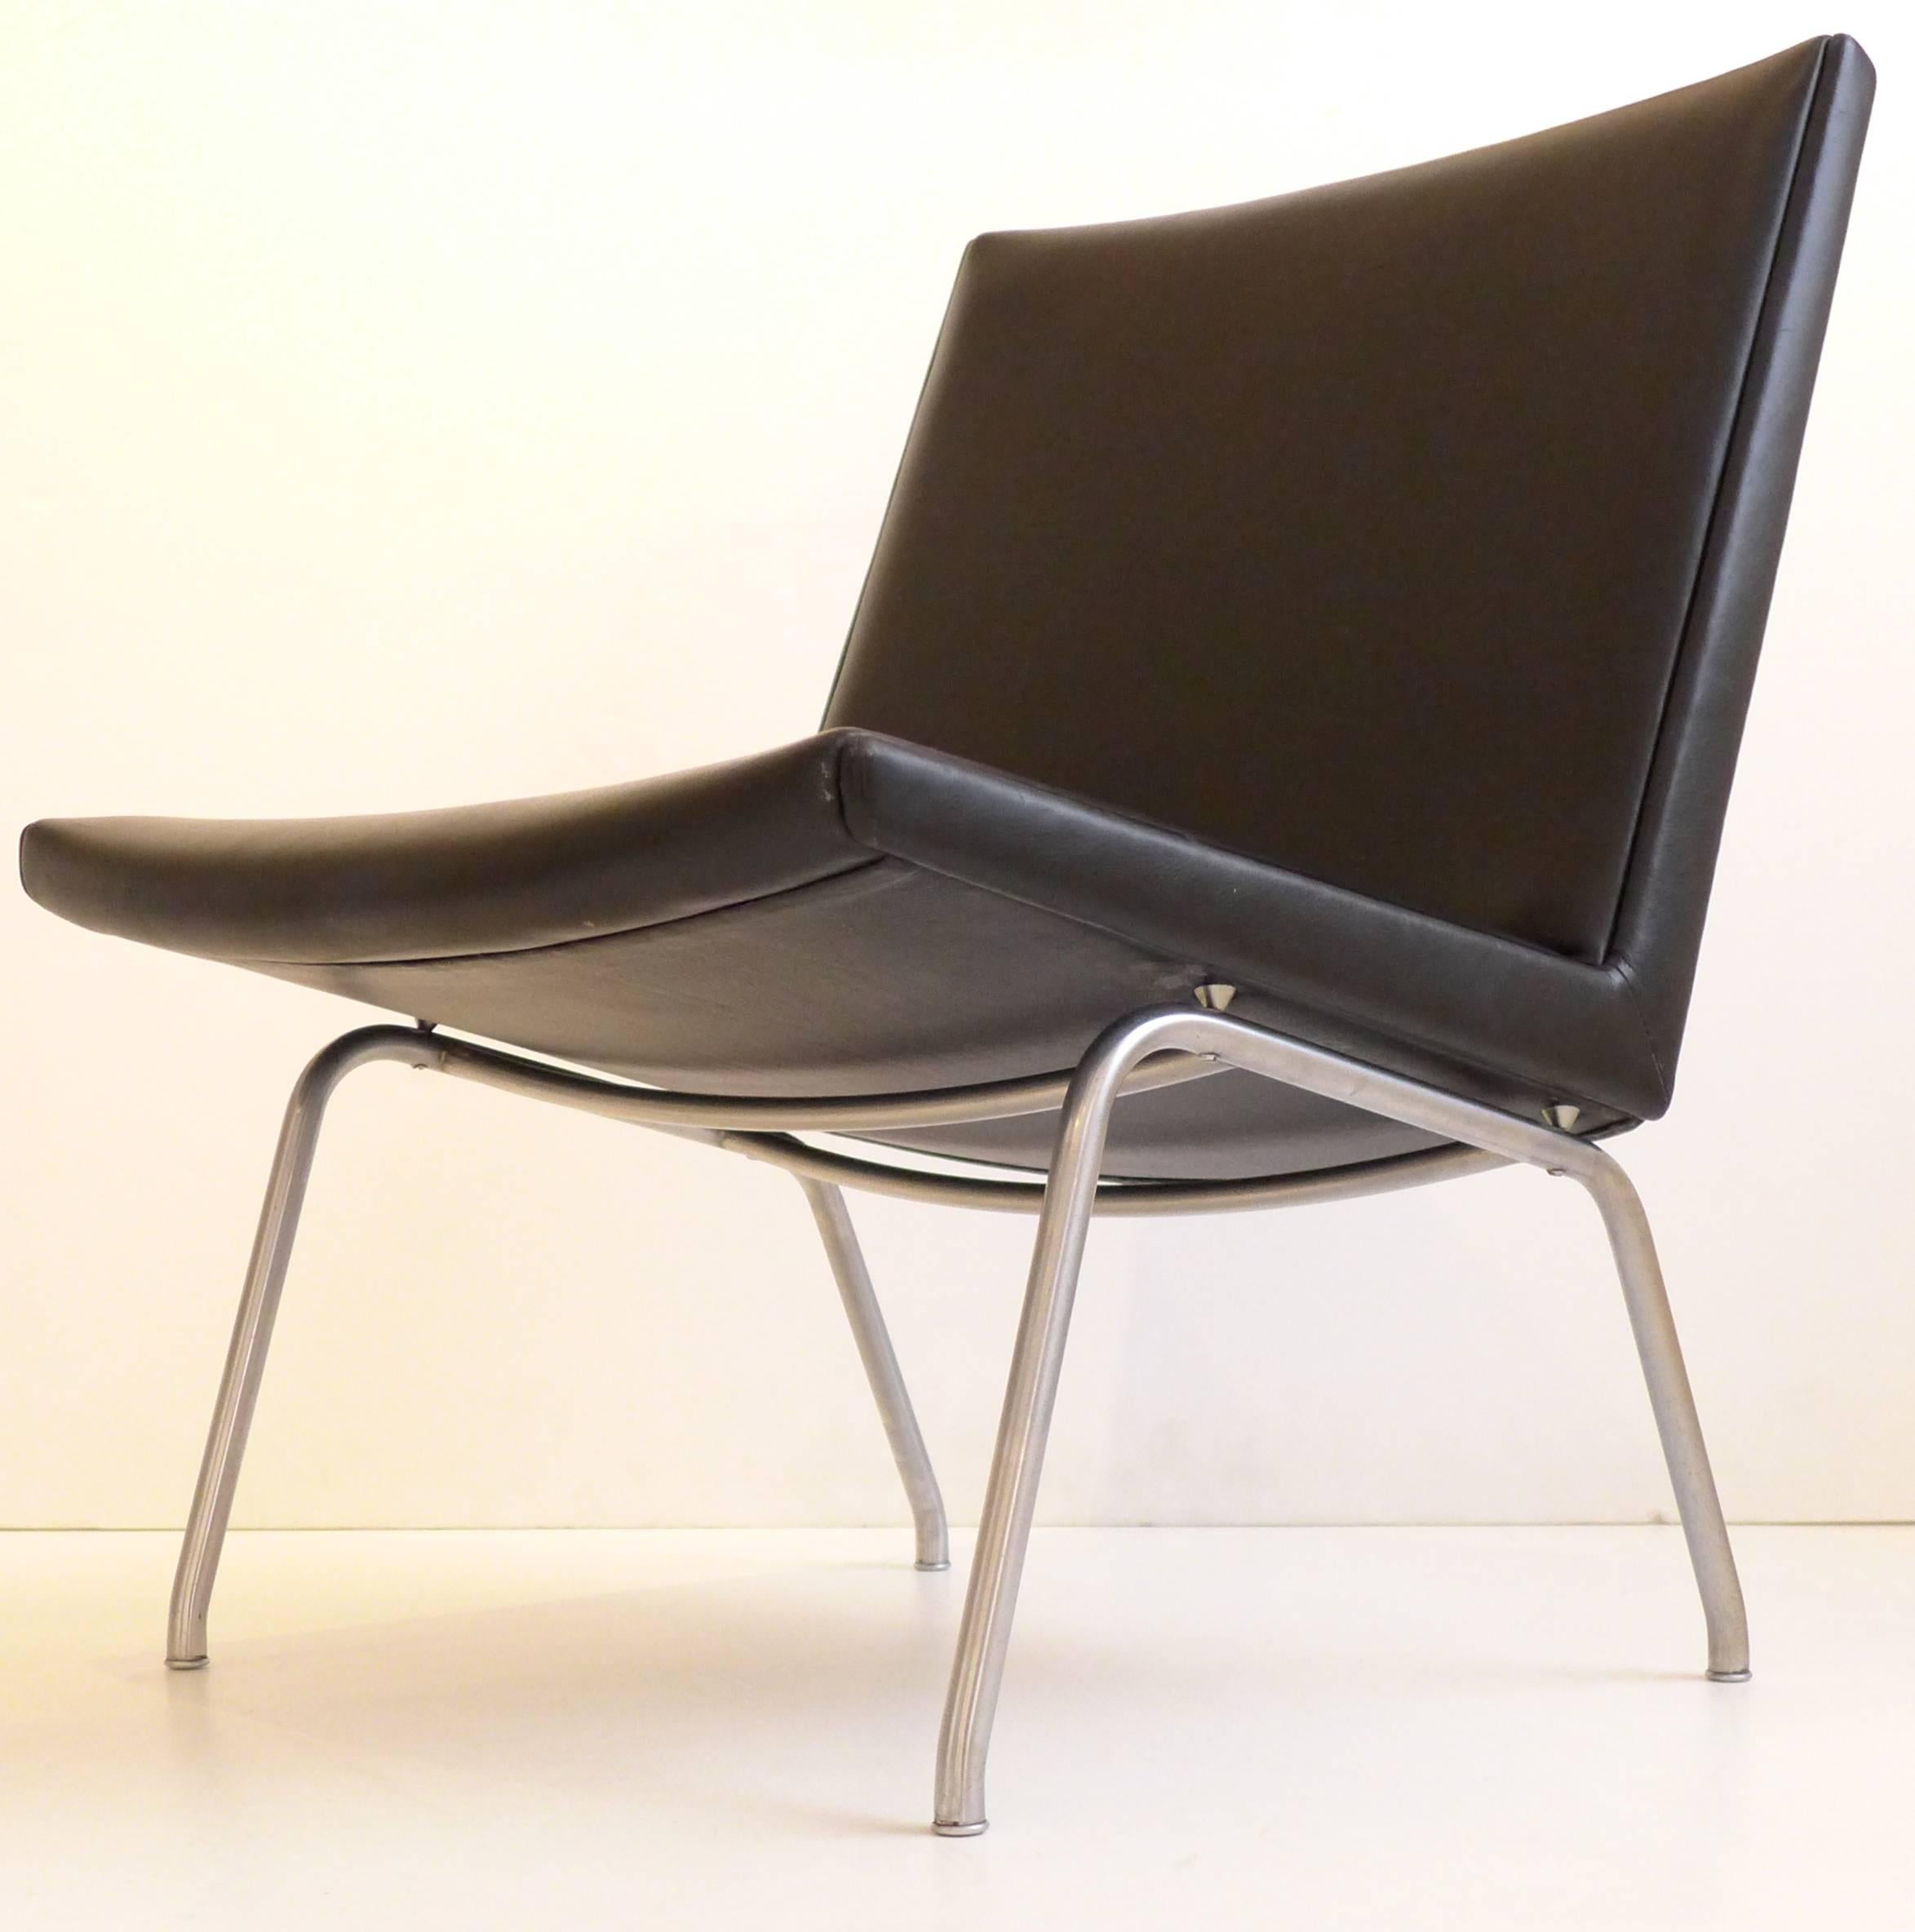 Schlanker Sessel aus verchromtem Stahl und Leder. Entworfen von Hans Wegner für den Flughafen Kastrup in Kopenhagen und hergestellt von A.P. Gestohlen von 1959-c. 1980. Dies ist ein Vintage-Exemplar in gutem Originalzustand, mit nur geringen